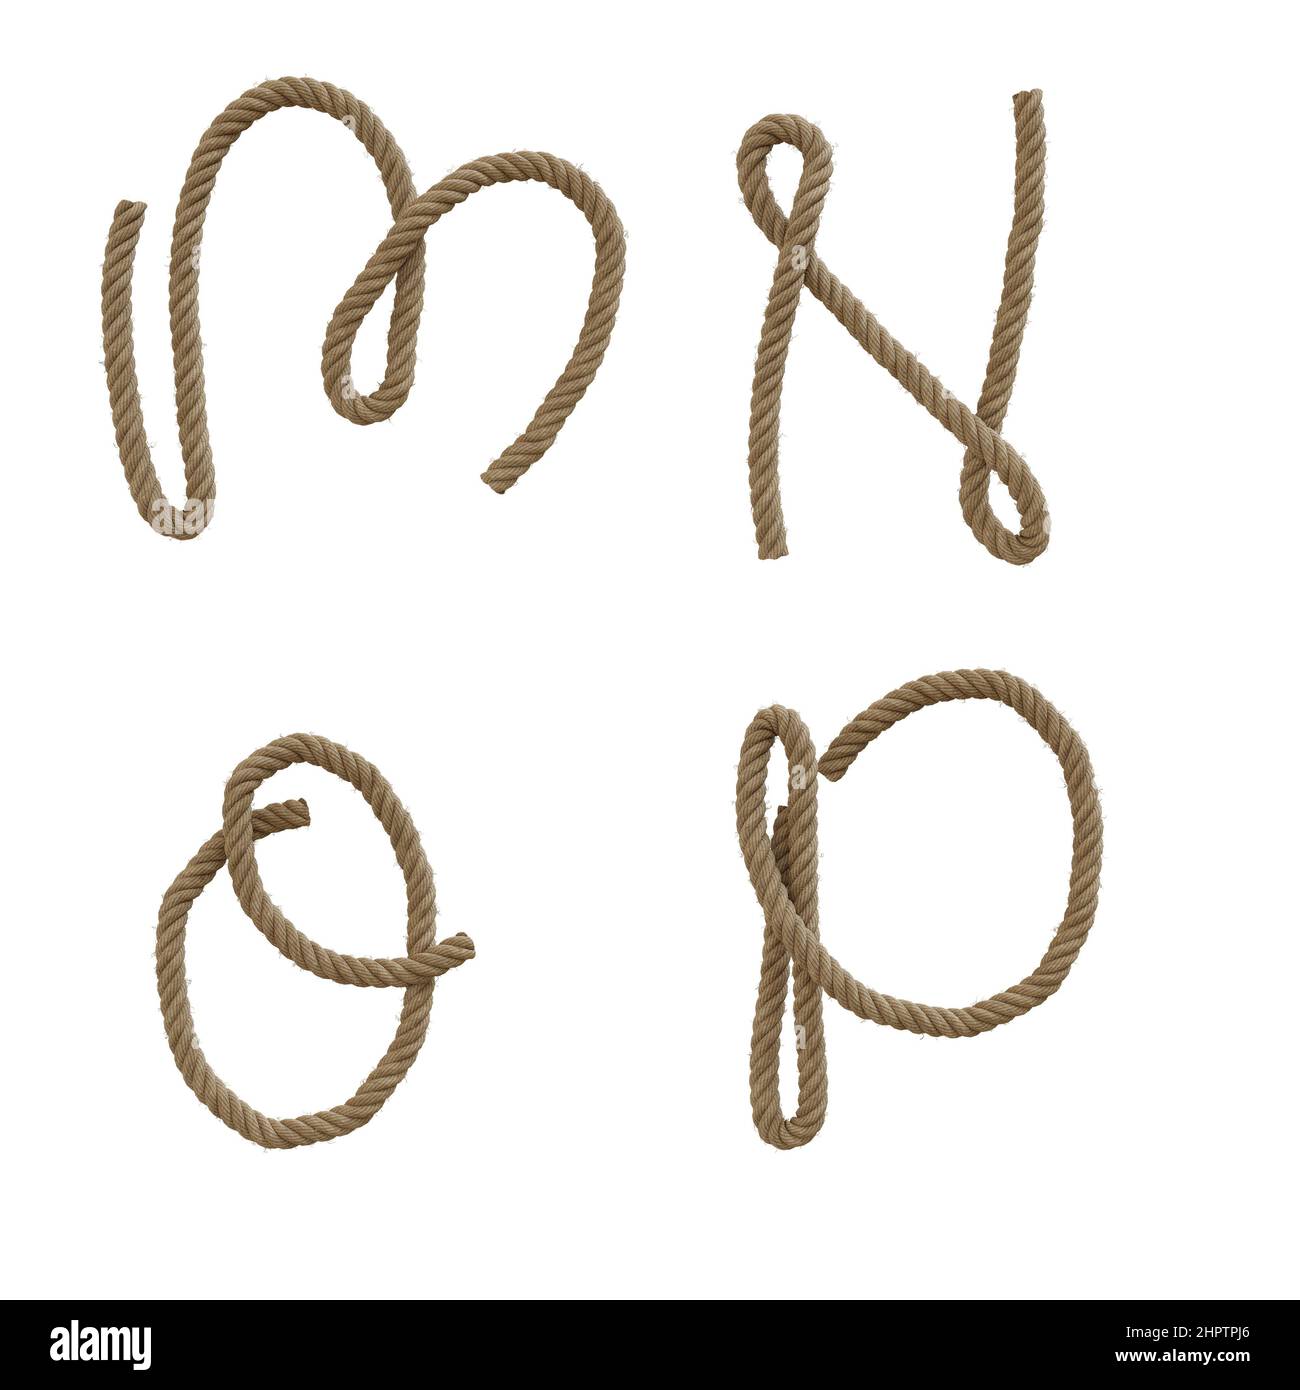 3D Darstellung von Hanfseil-Großbuchstaben Alphabet - Buchstaben M-P Stockfoto